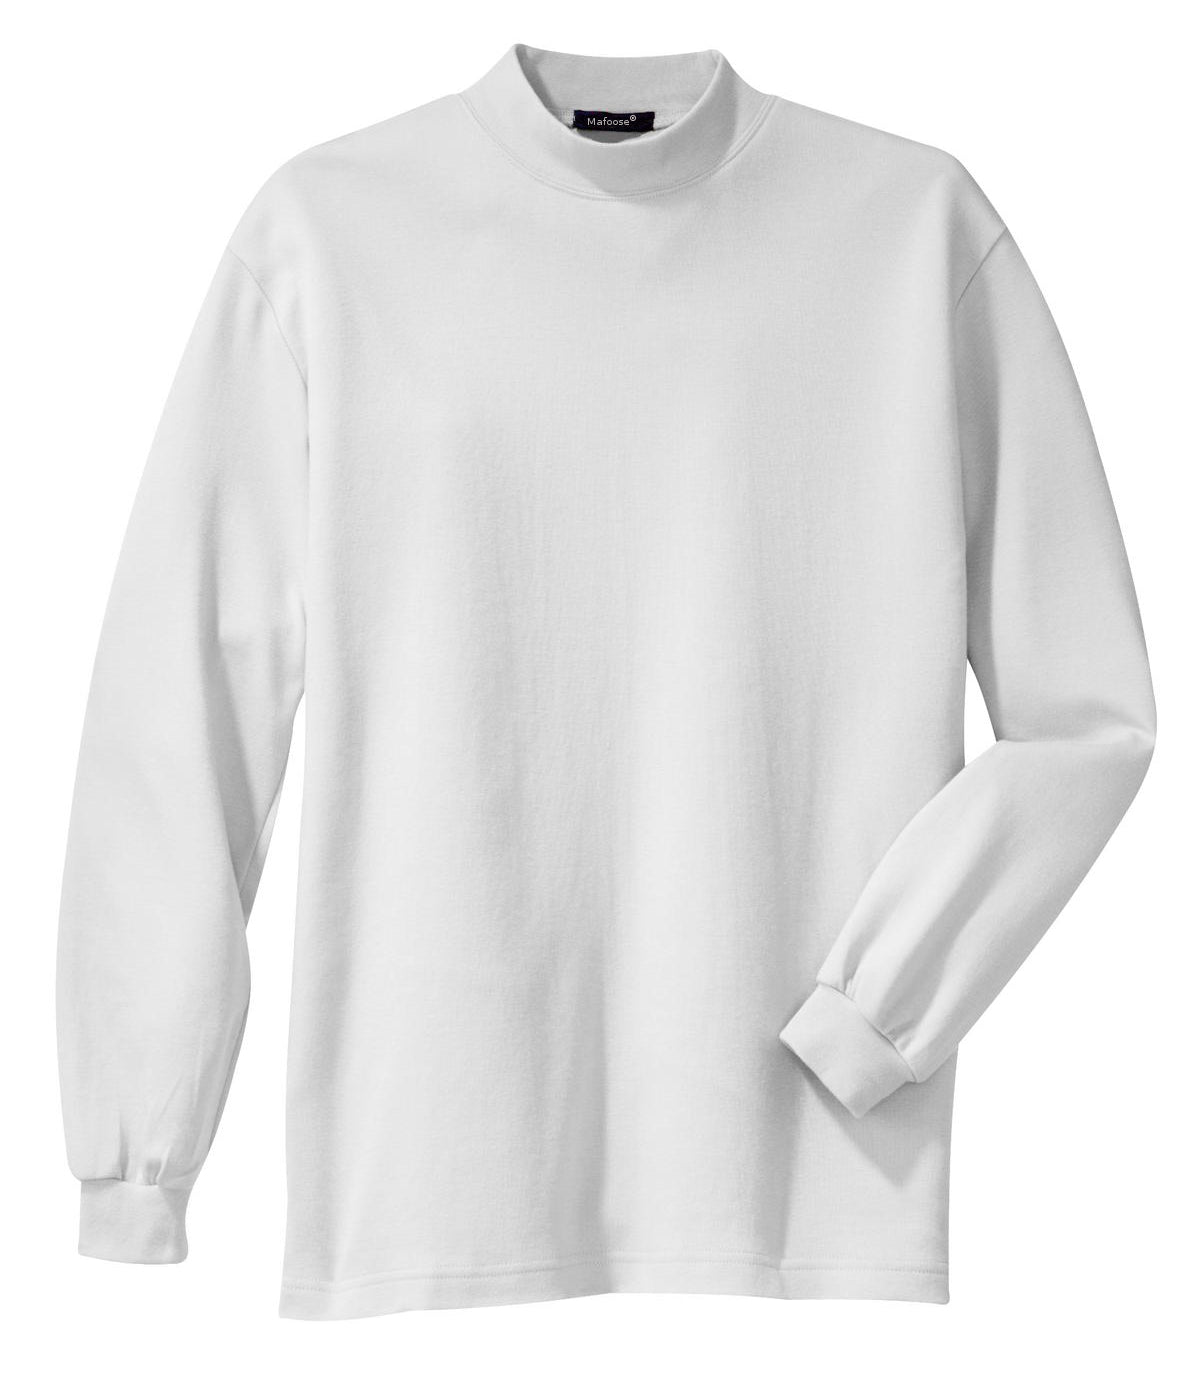 Mafoose Men's Interlock Knit Mock Turtleneck Sweaters White-Front